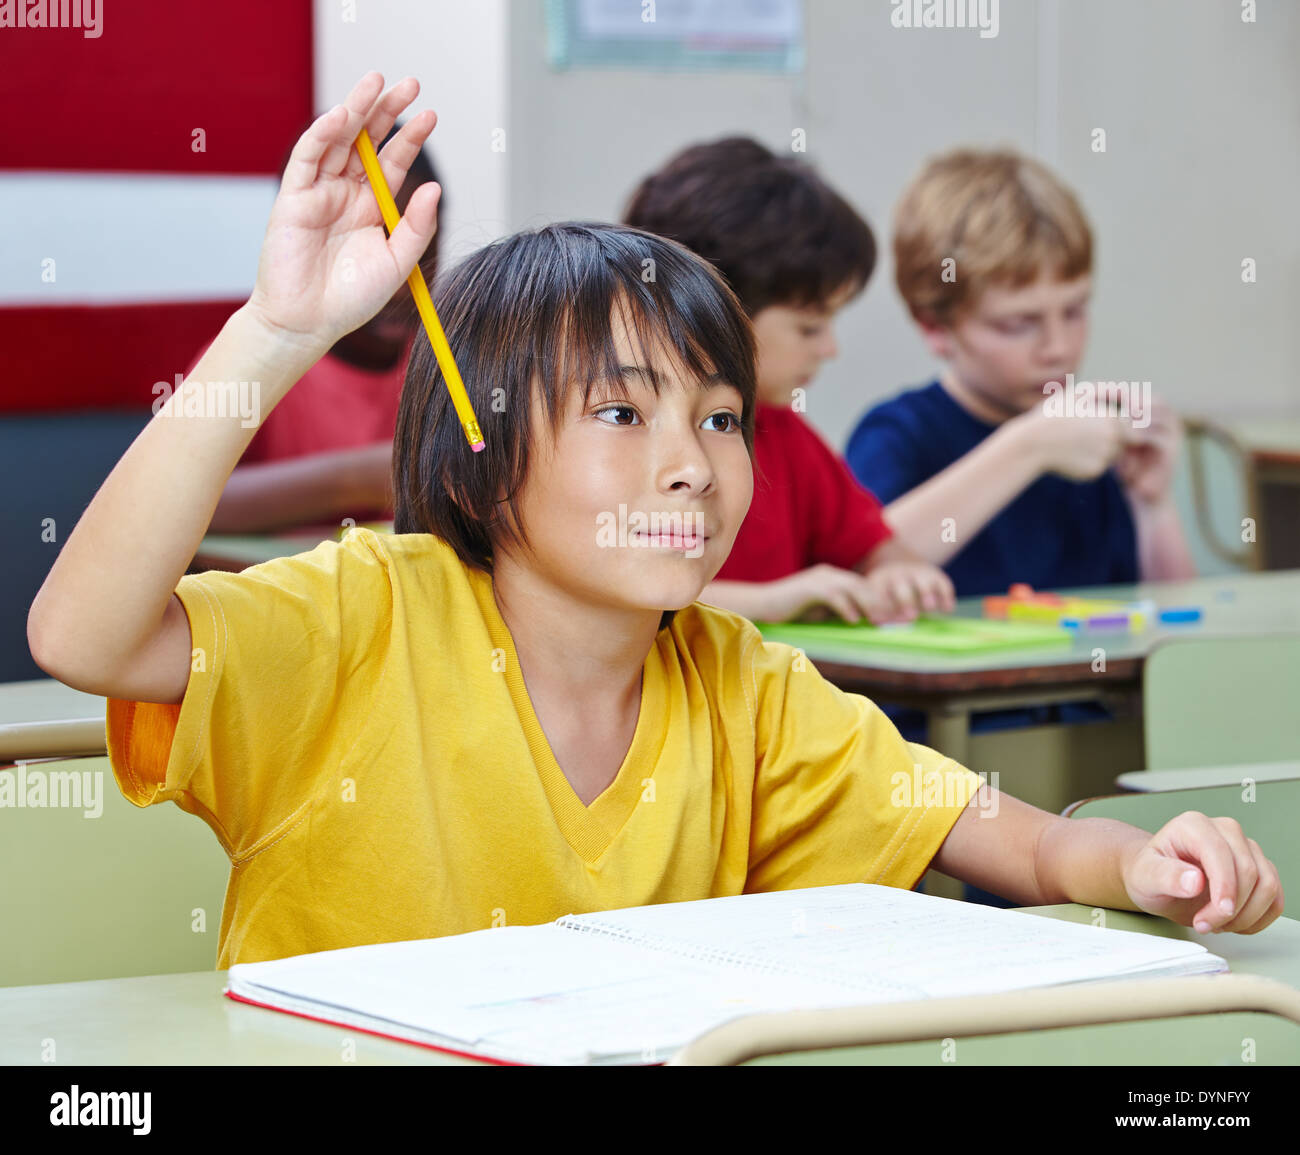 Estudiante de la escuela elemental japonesa levantando su mano en clase Foto de stock